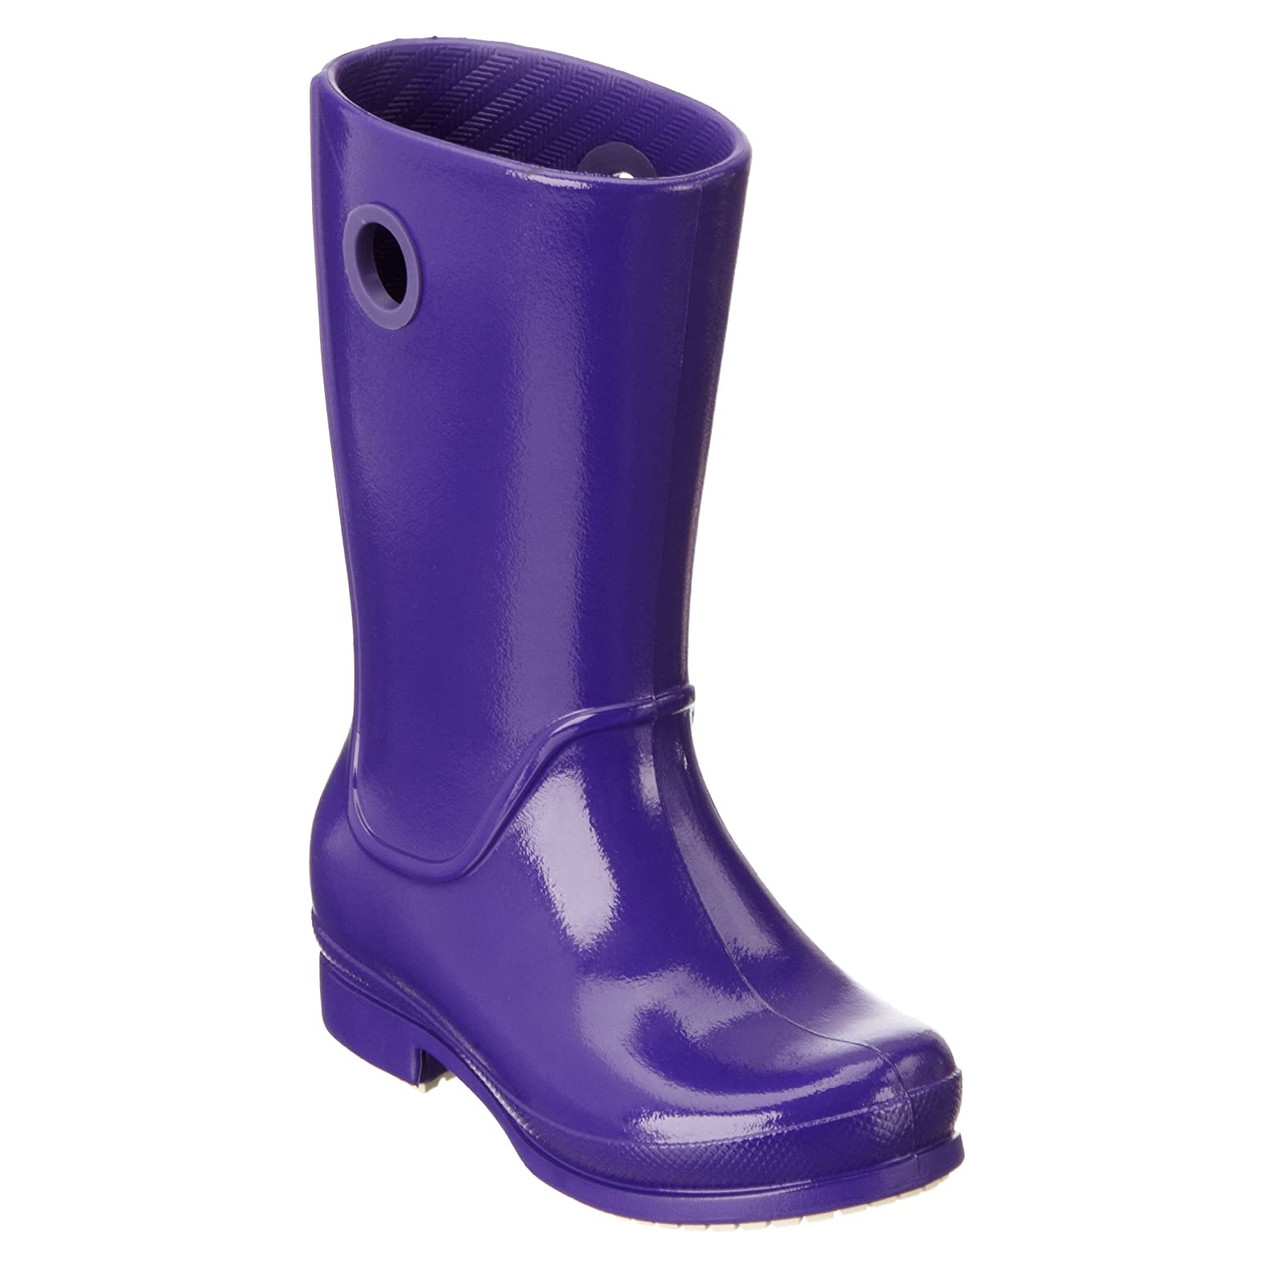 Сапоги резиновые для девочки Кроксы глянцевые / Crocs Girls Wellie Patent Rain Boot (12470), Фиолетовые 26